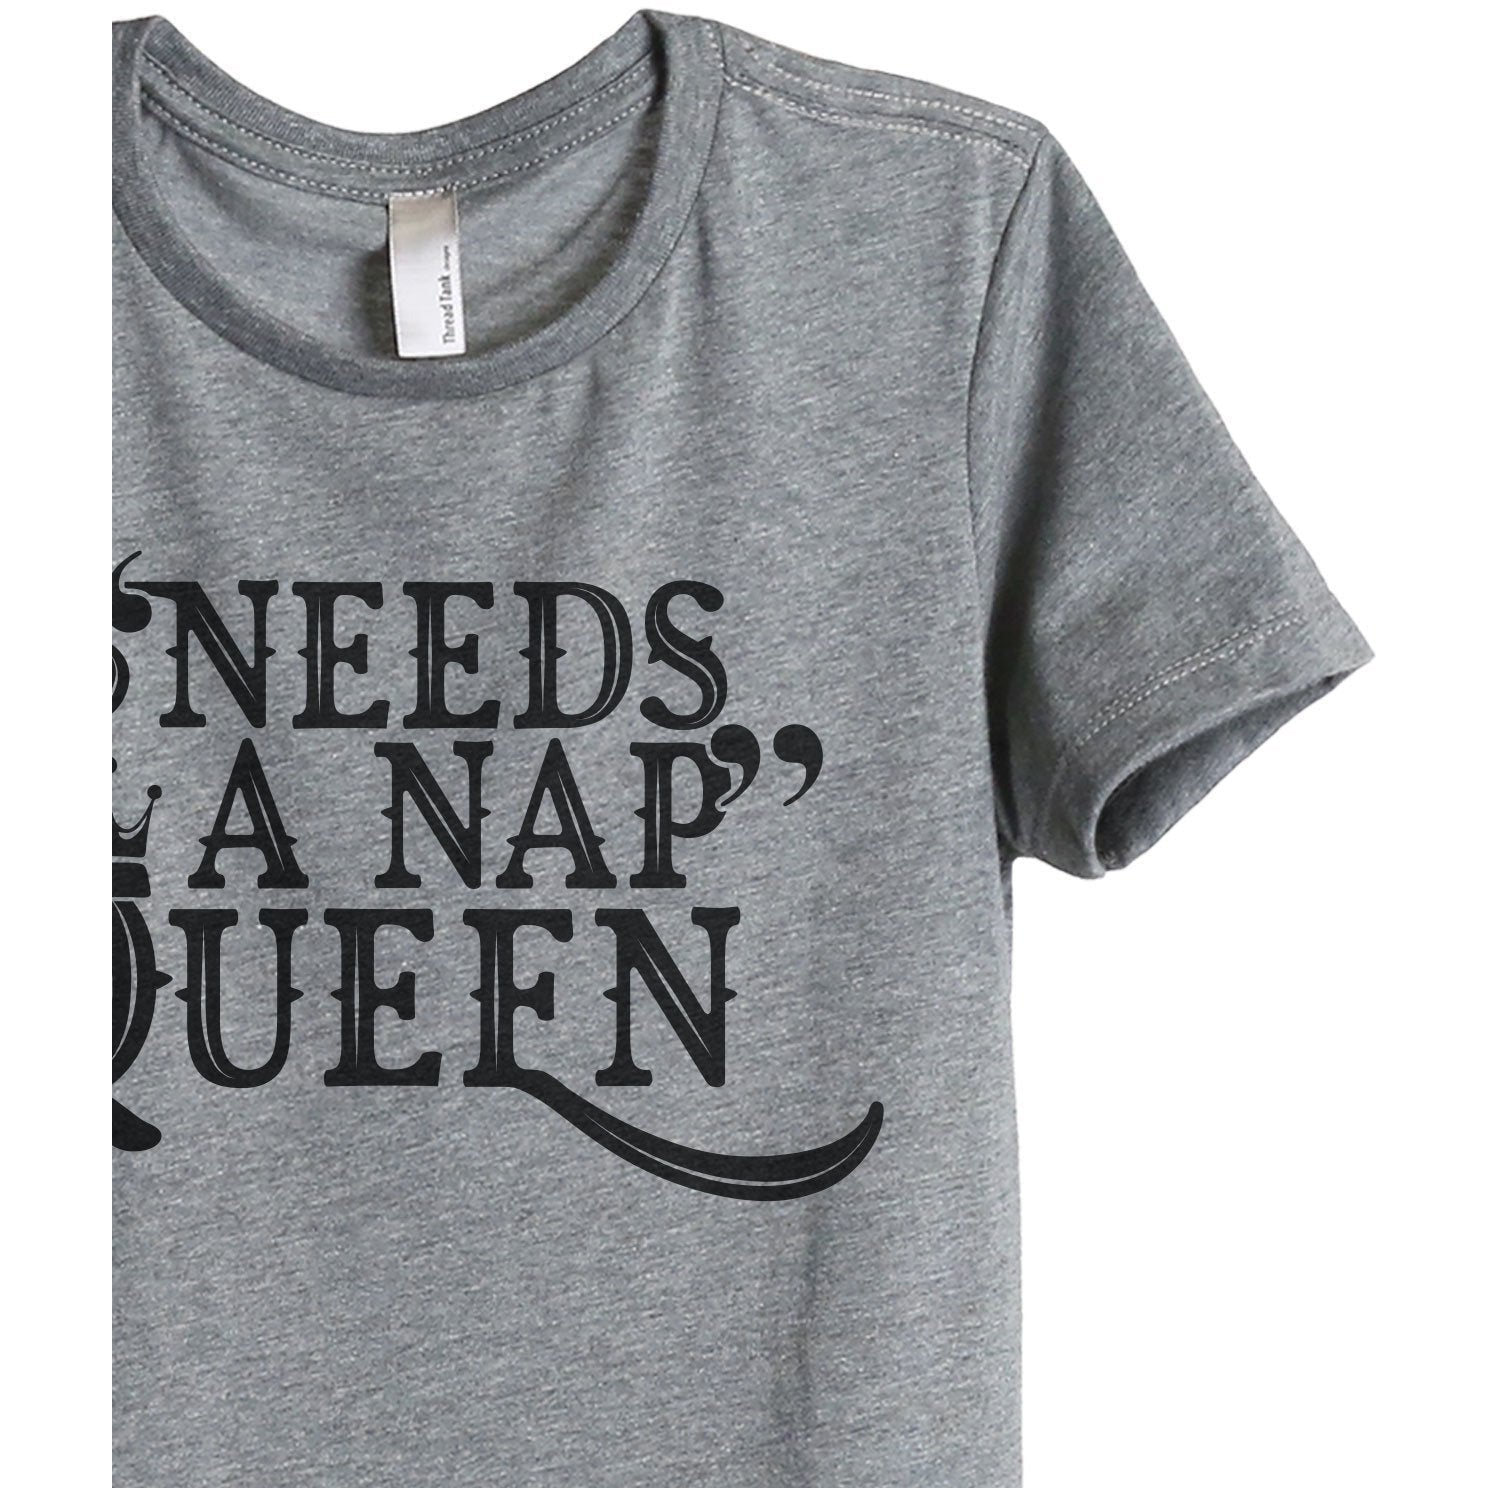 Needs A Nap Queen Women's Relaxed Crew T-Shirt Heather Gray Shirt Image Closeup Details